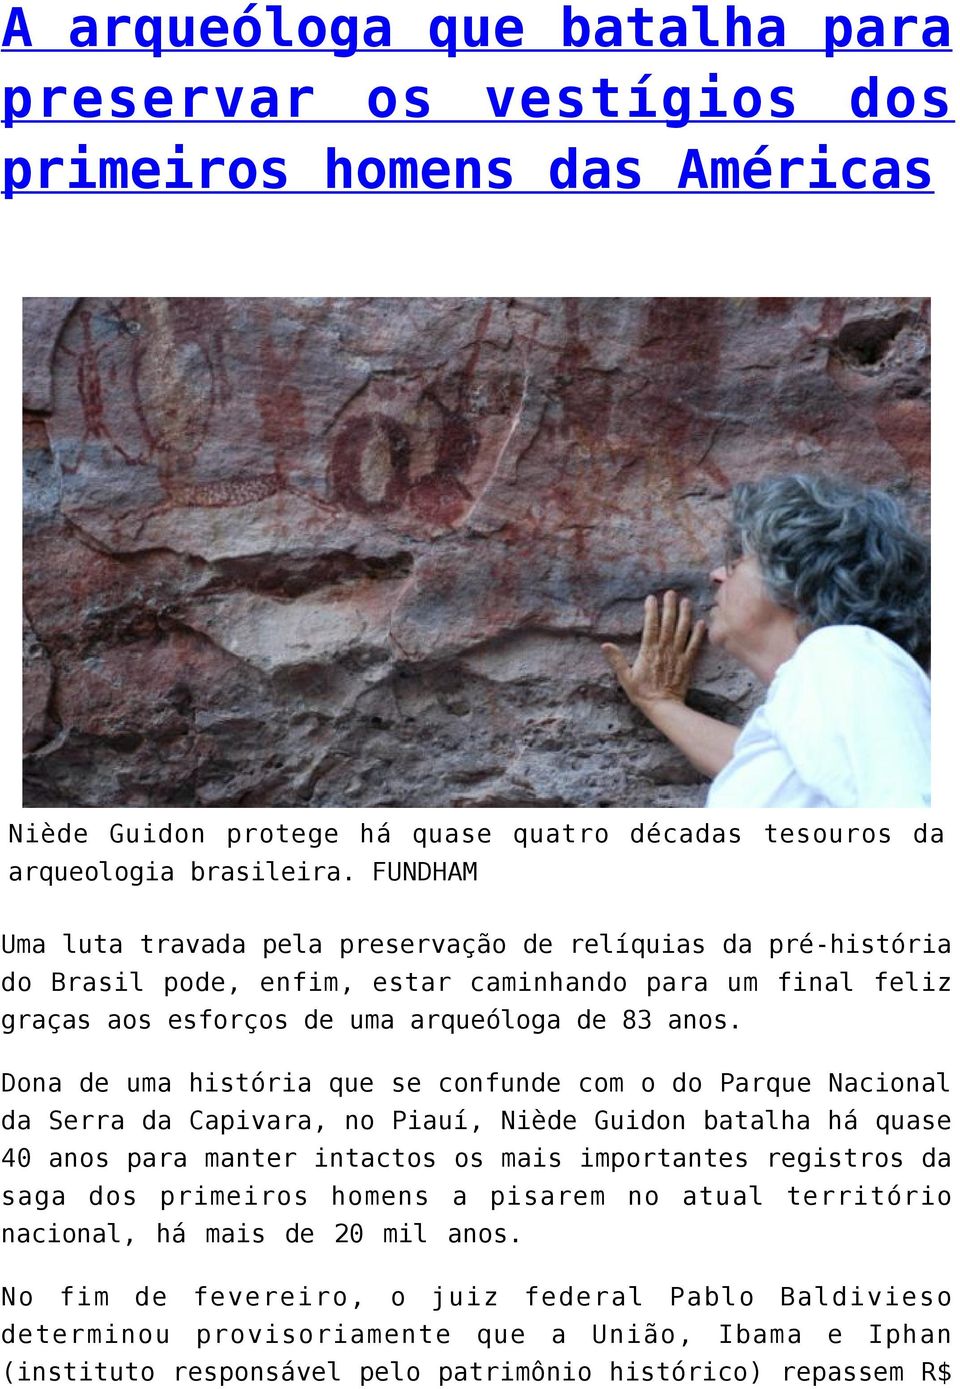 Dona de uma história que se confunde com o do Parque Nacional da Serra da Capivara, no Piauí, Niède Guidon batalha há quase 40 anos para manter intactos os mais importantes registros da saga dos